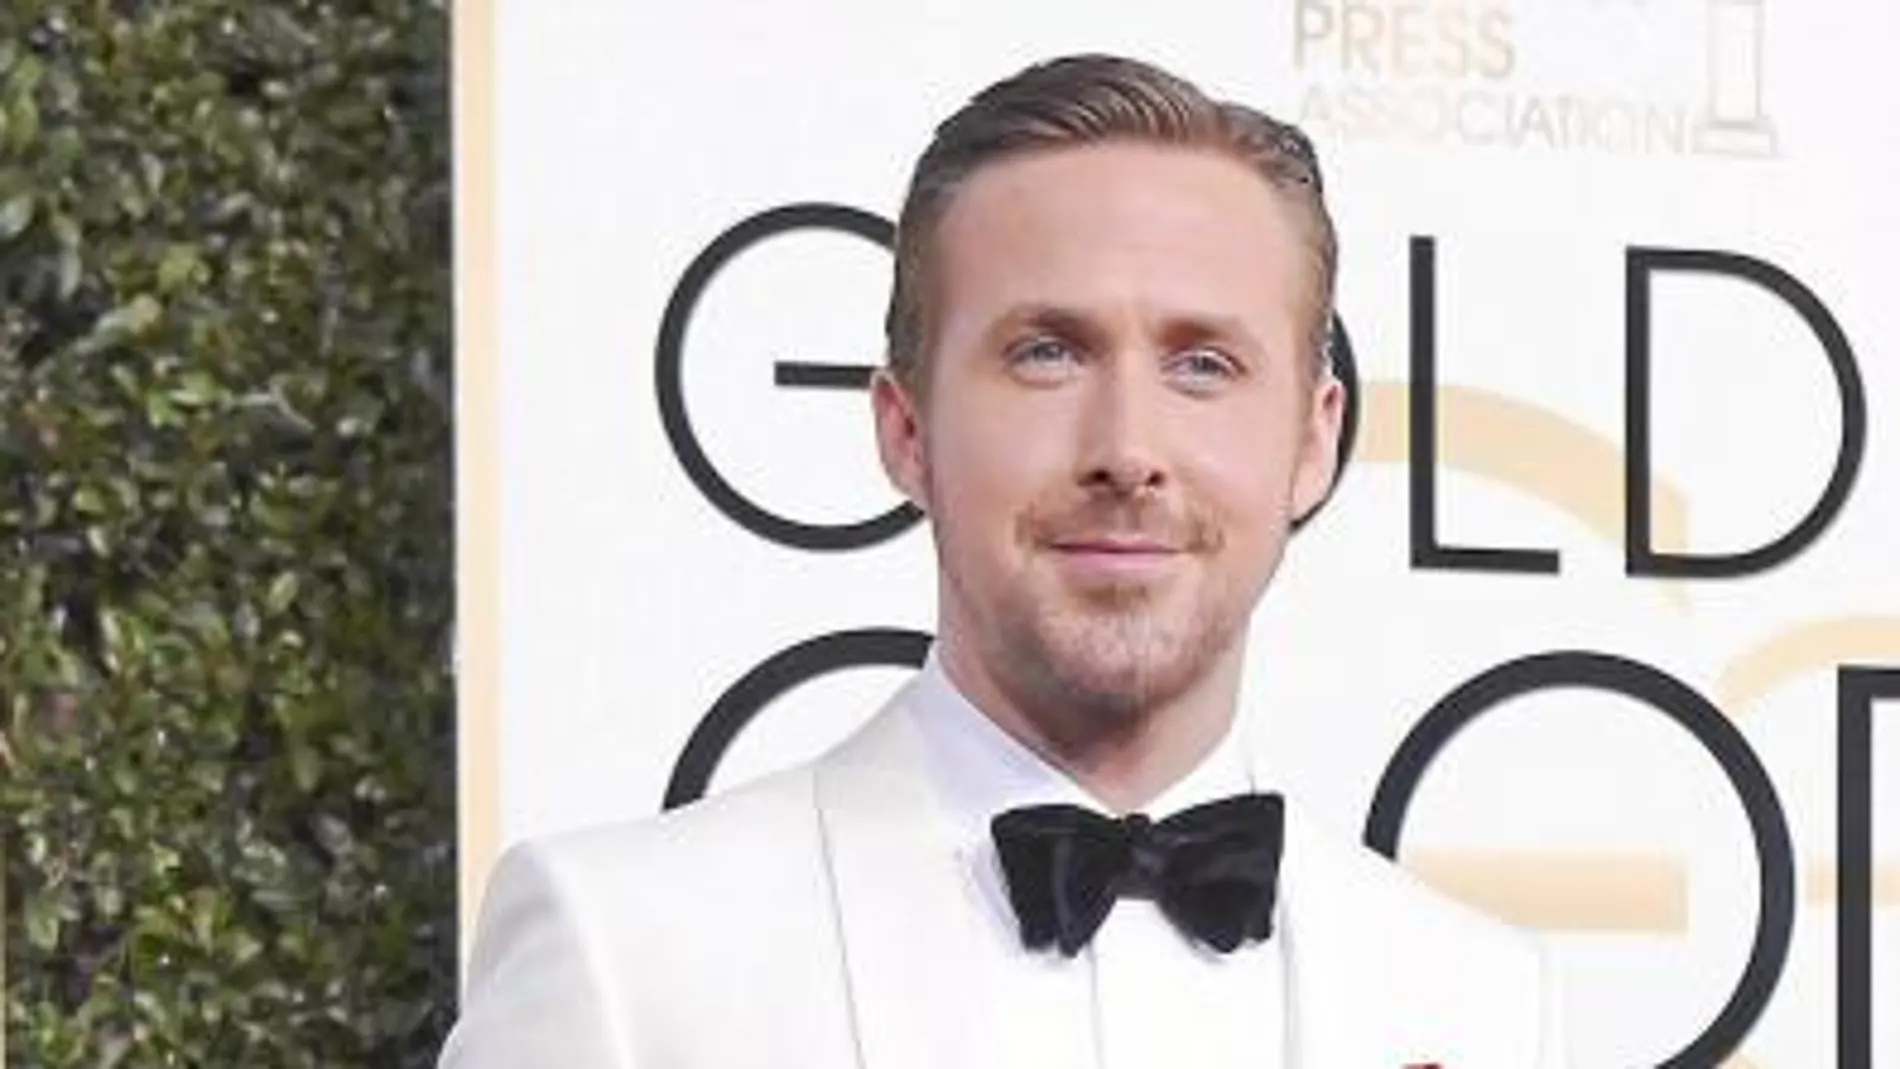 Ryan Gosling triunfó en la alfombra roja con un esmoquin bicolor